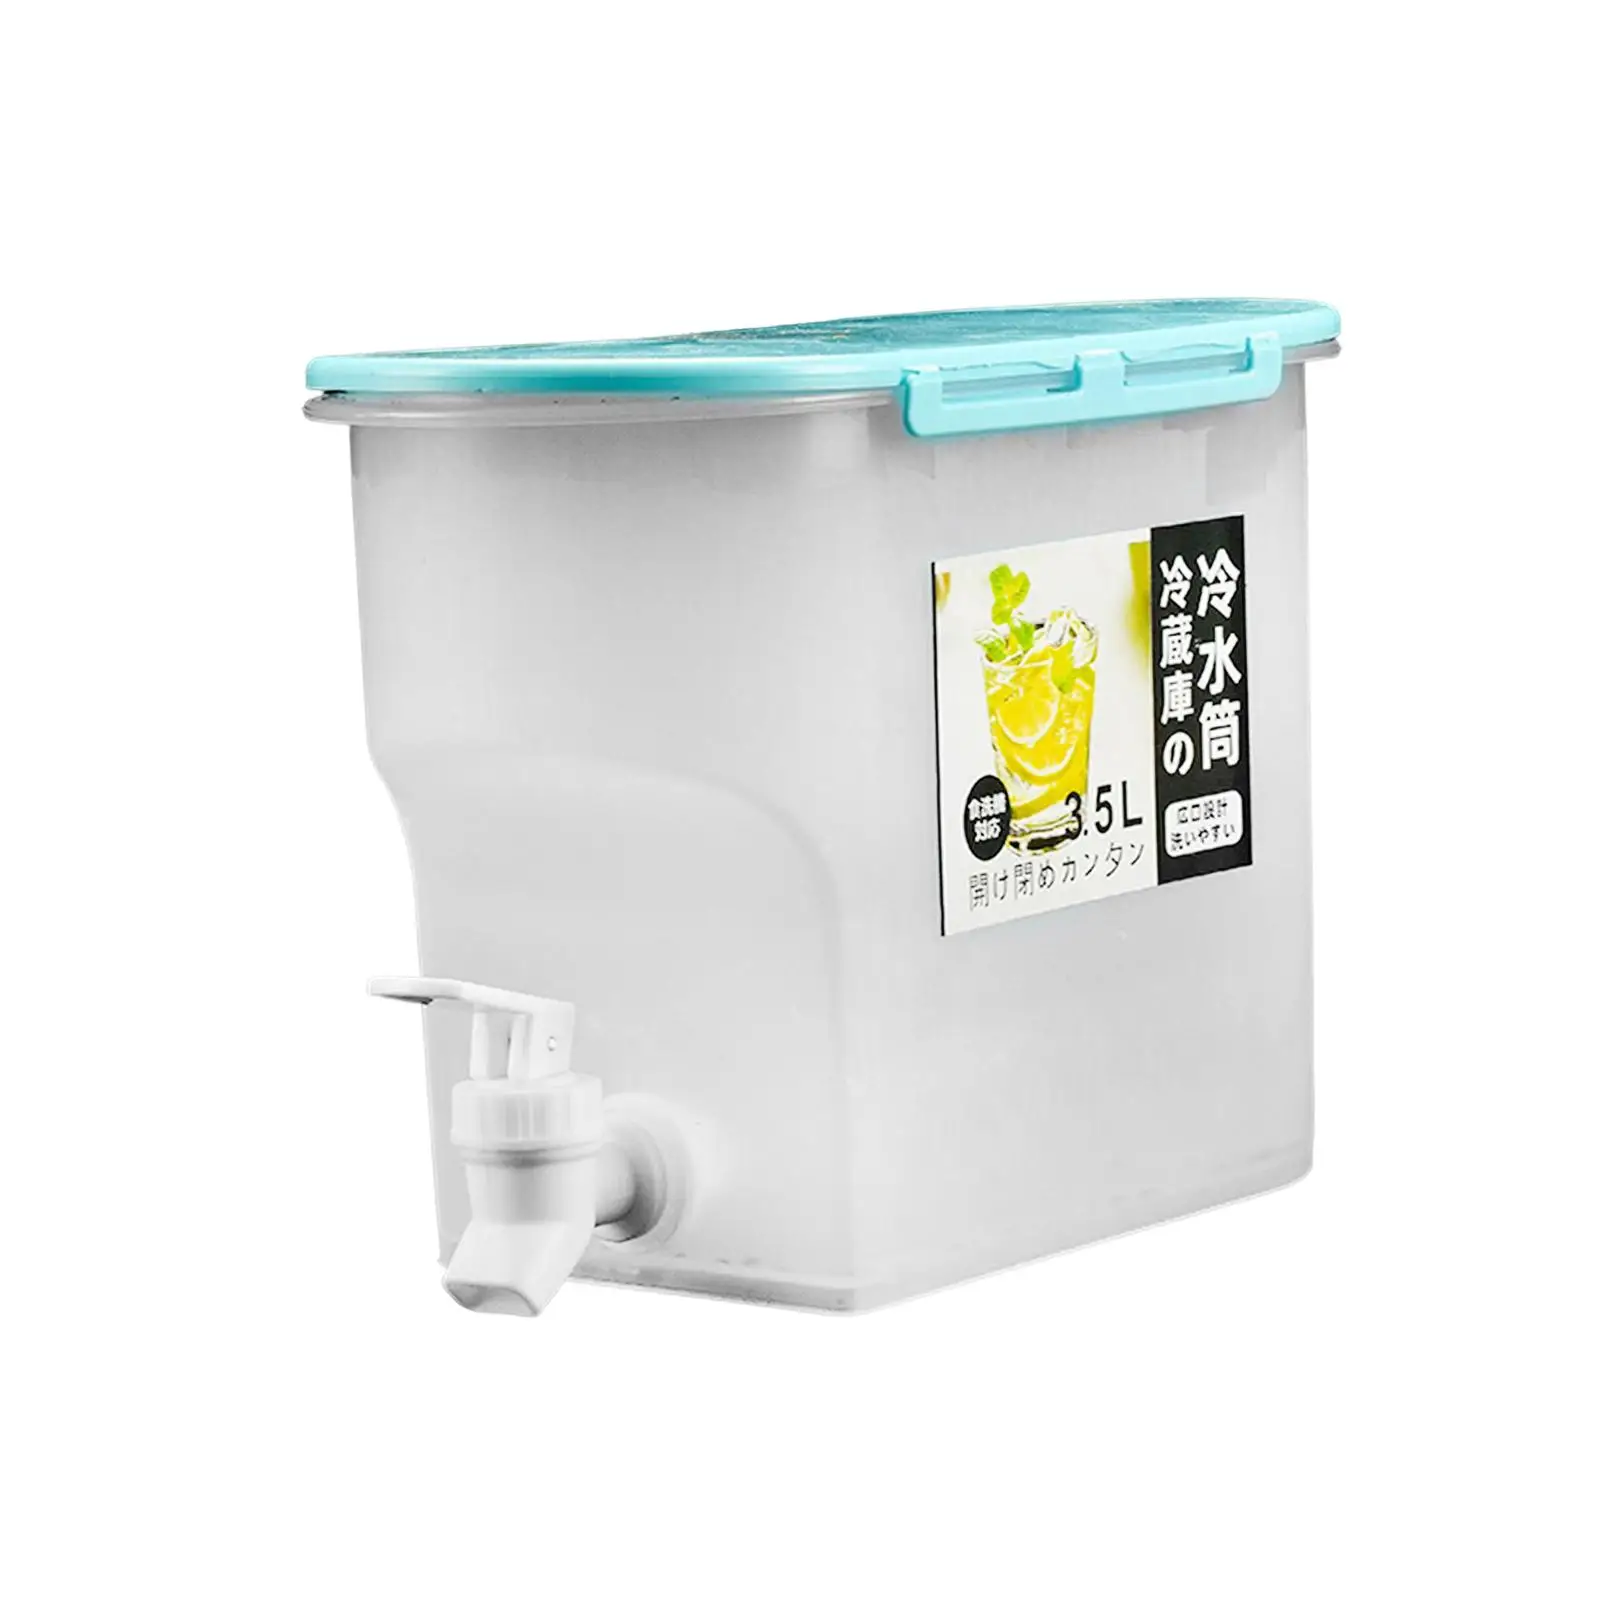 Iced Beverage Dispenser with Leakproof Spigot Cold Drink Juice Dispenser Jug for Outdoor